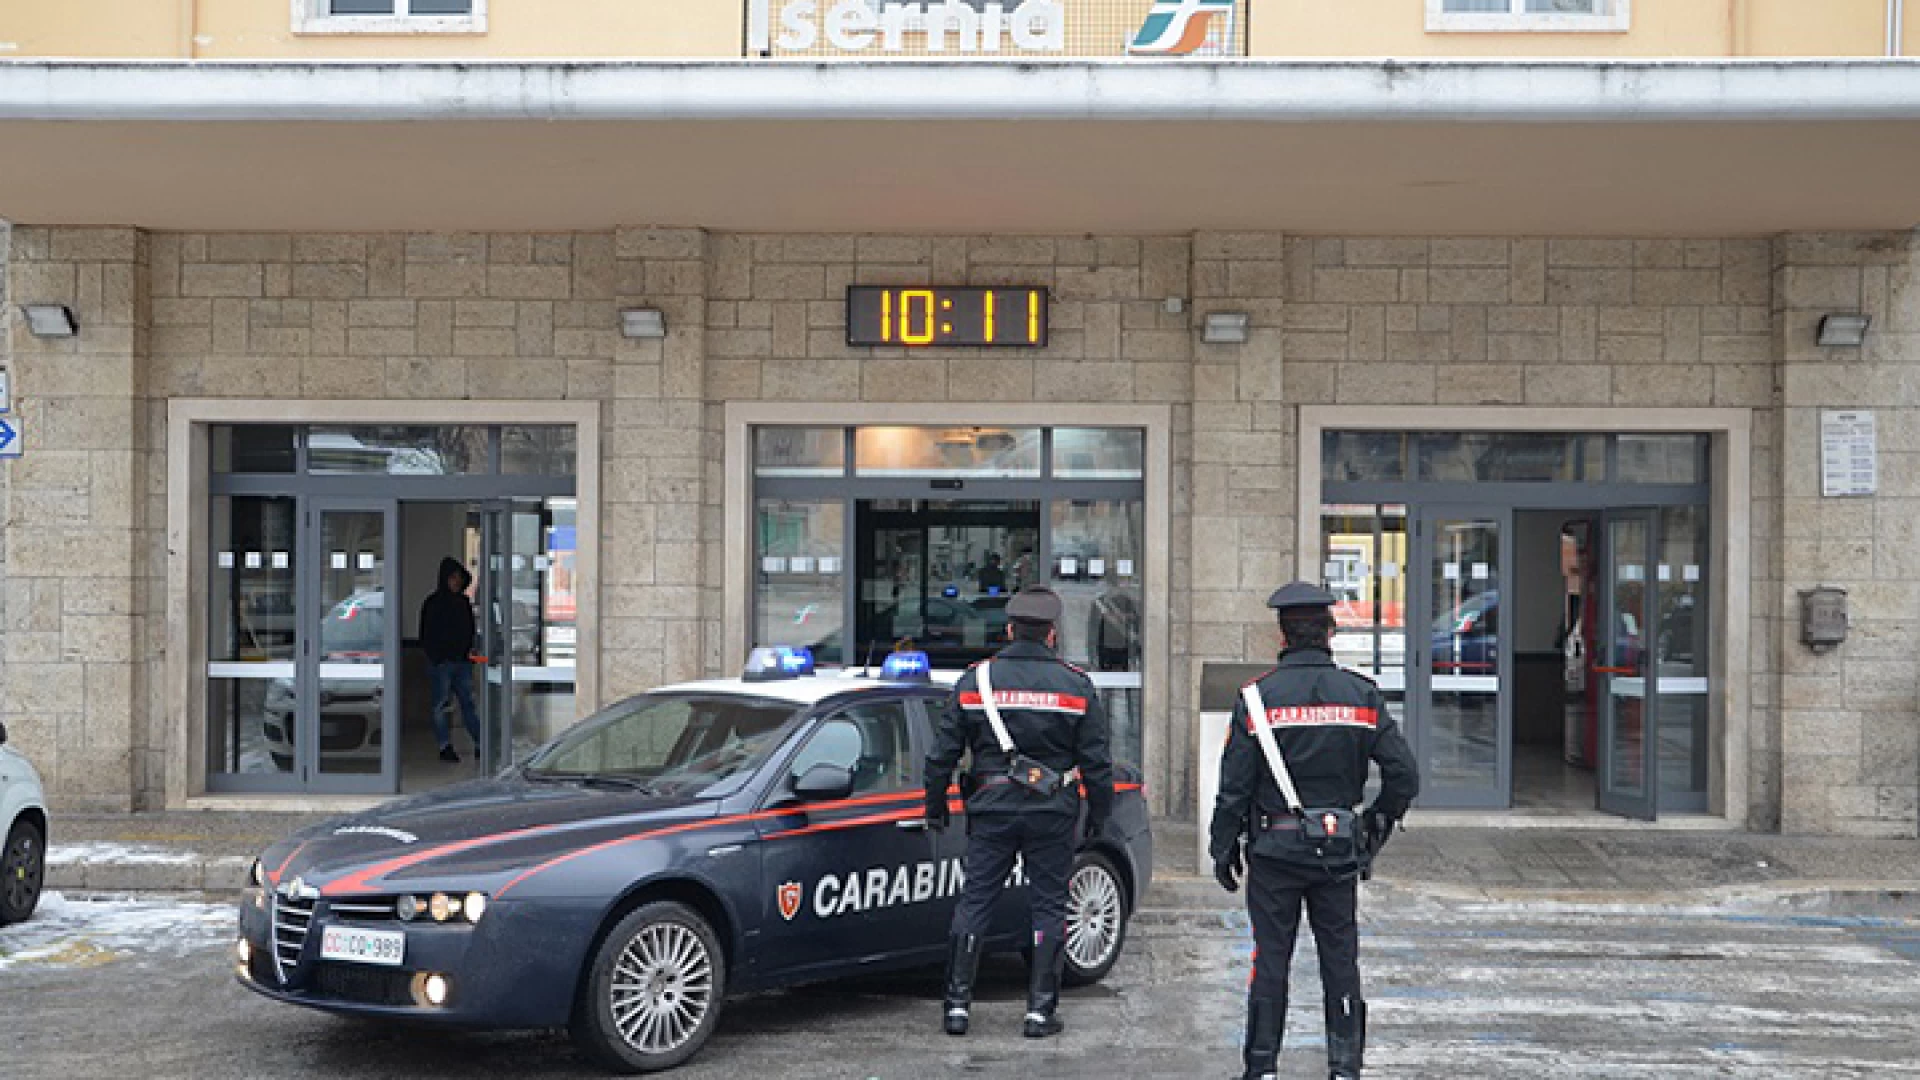 Isernia: Operazione antidroga dei Carabinieri presso lo scalo ferroviario, 23enne denunciato per detenzione e spaccio di stupefacenti. Sotto sequestro dosi di marijuana